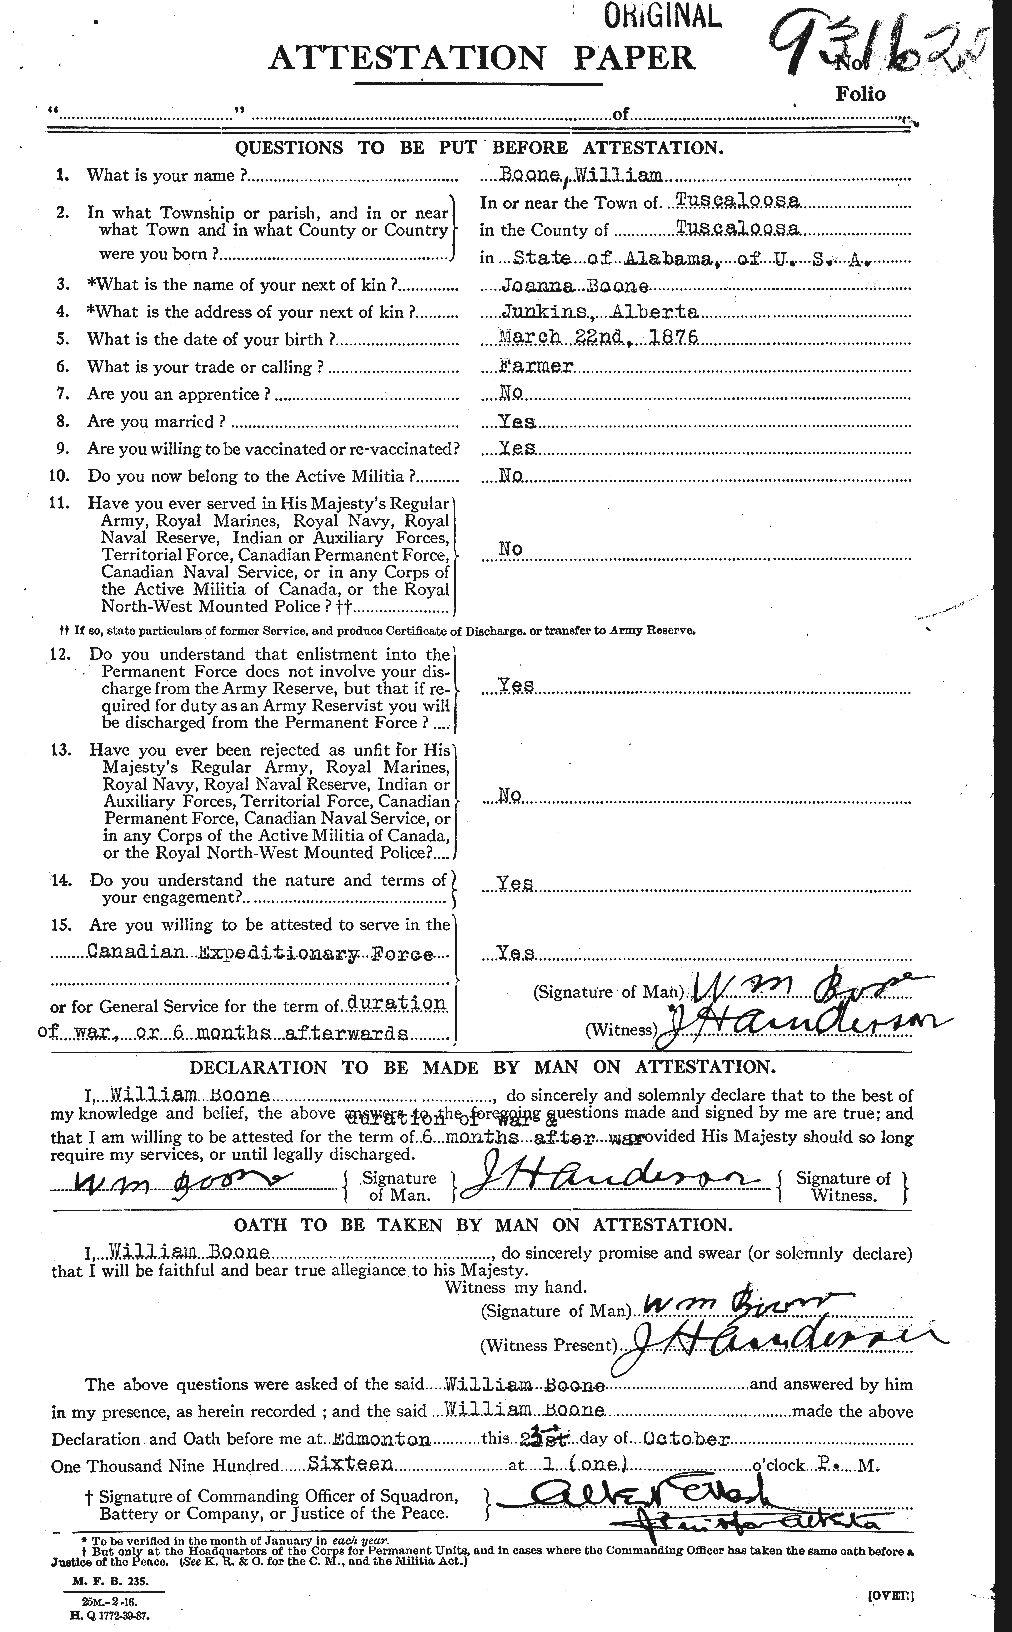 Dossiers du Personnel de la Première Guerre mondiale - CEC 251323a